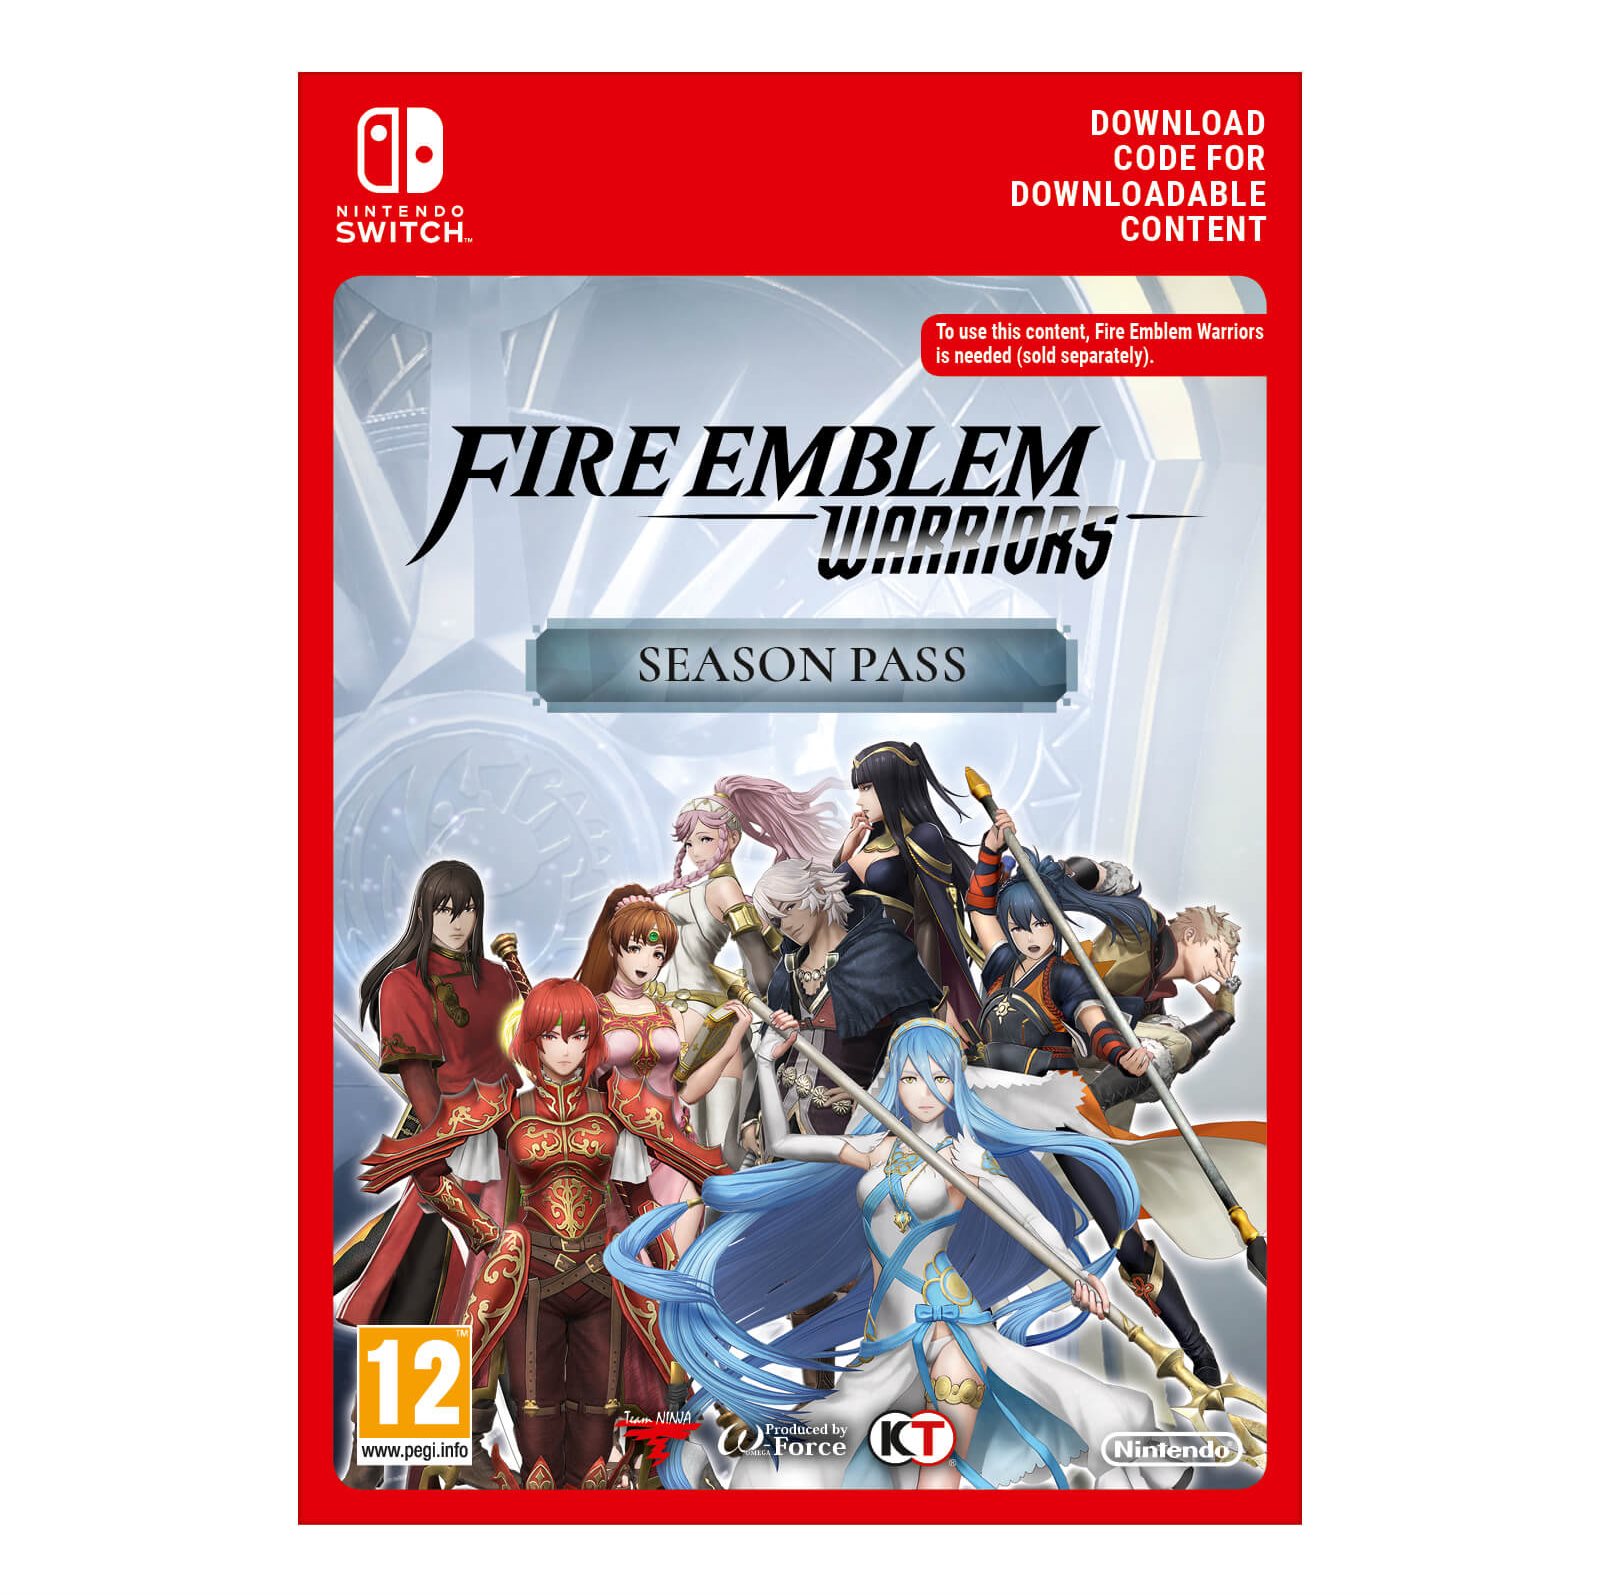 Fire Emblem Warriors Season Pass - Nintendo Switch Digital